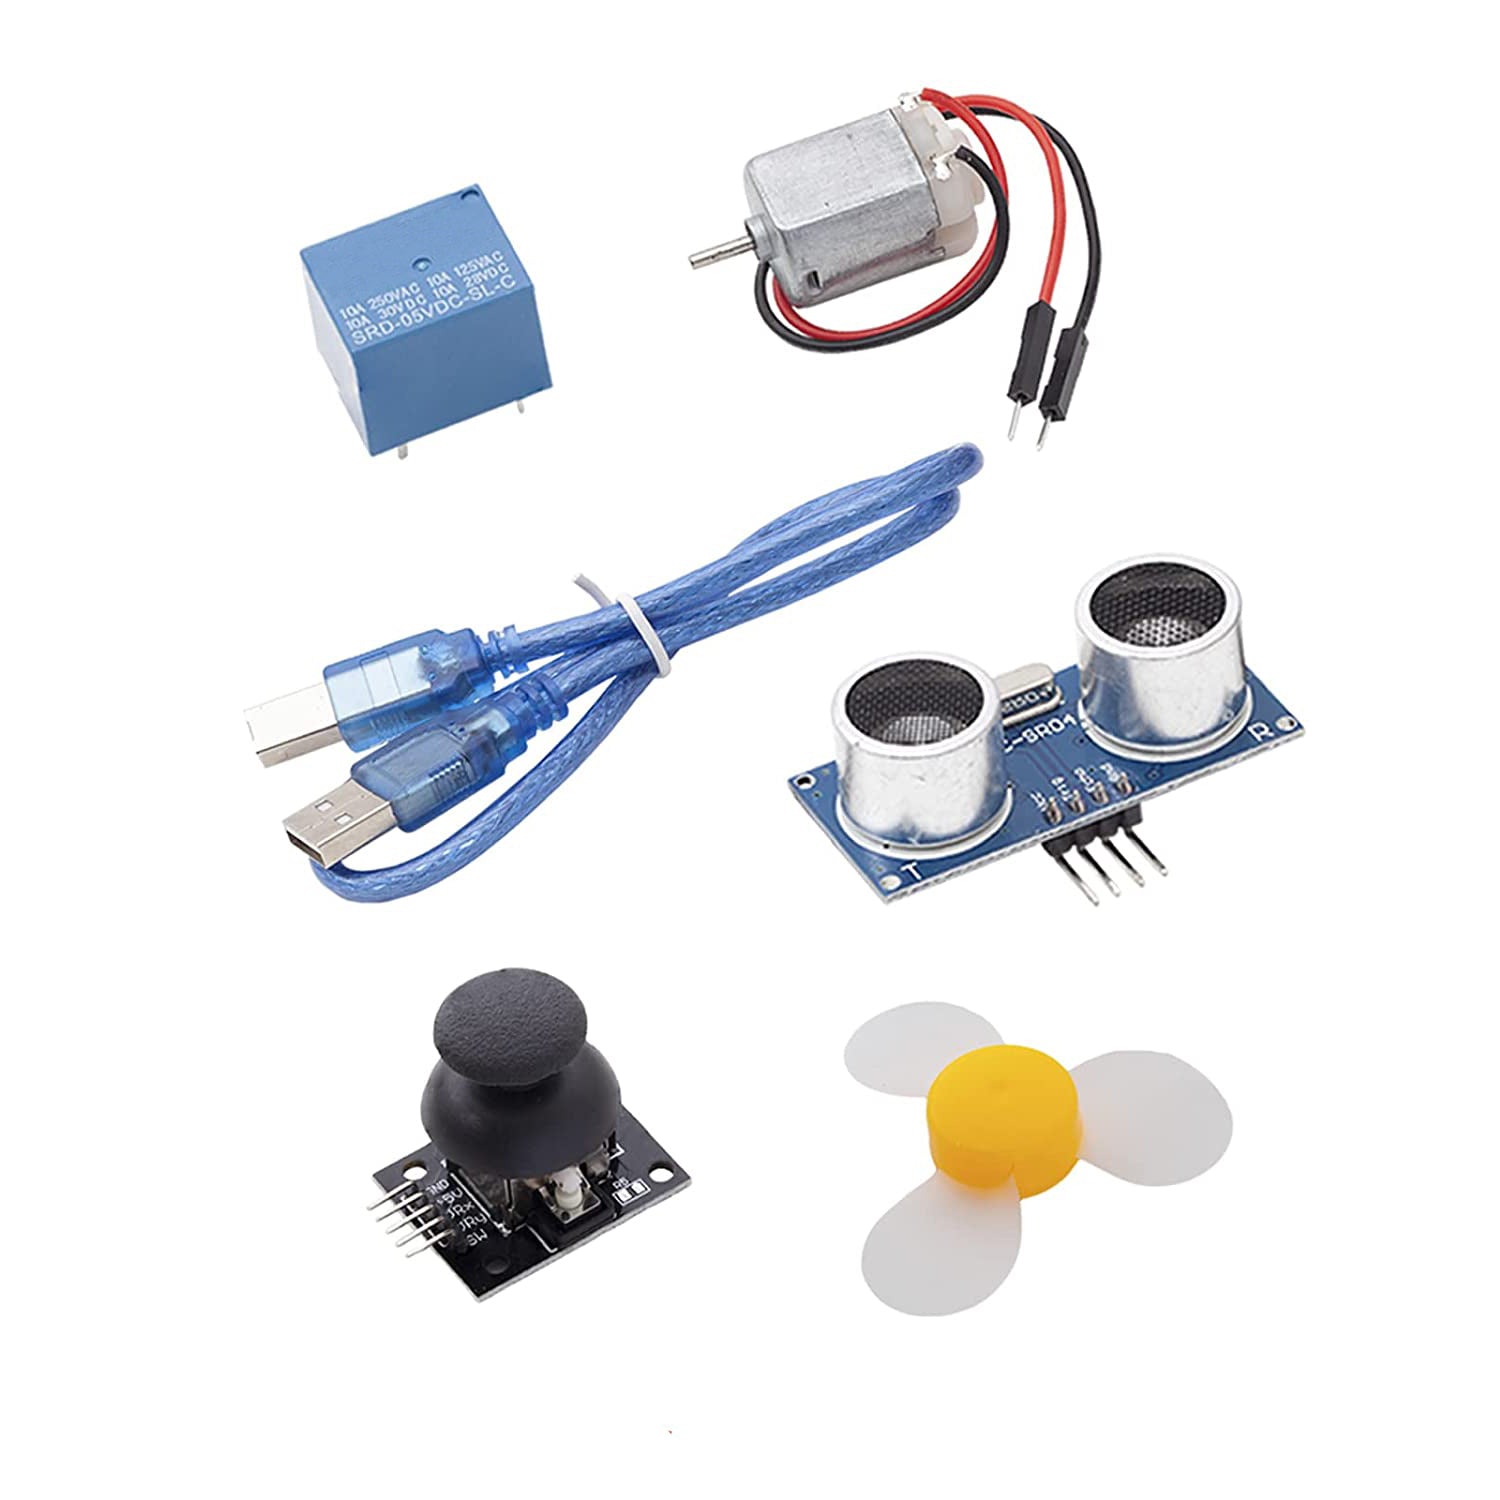 Acquista Kit di base Elego UNO per Arduino UNO R3 Mega 2560